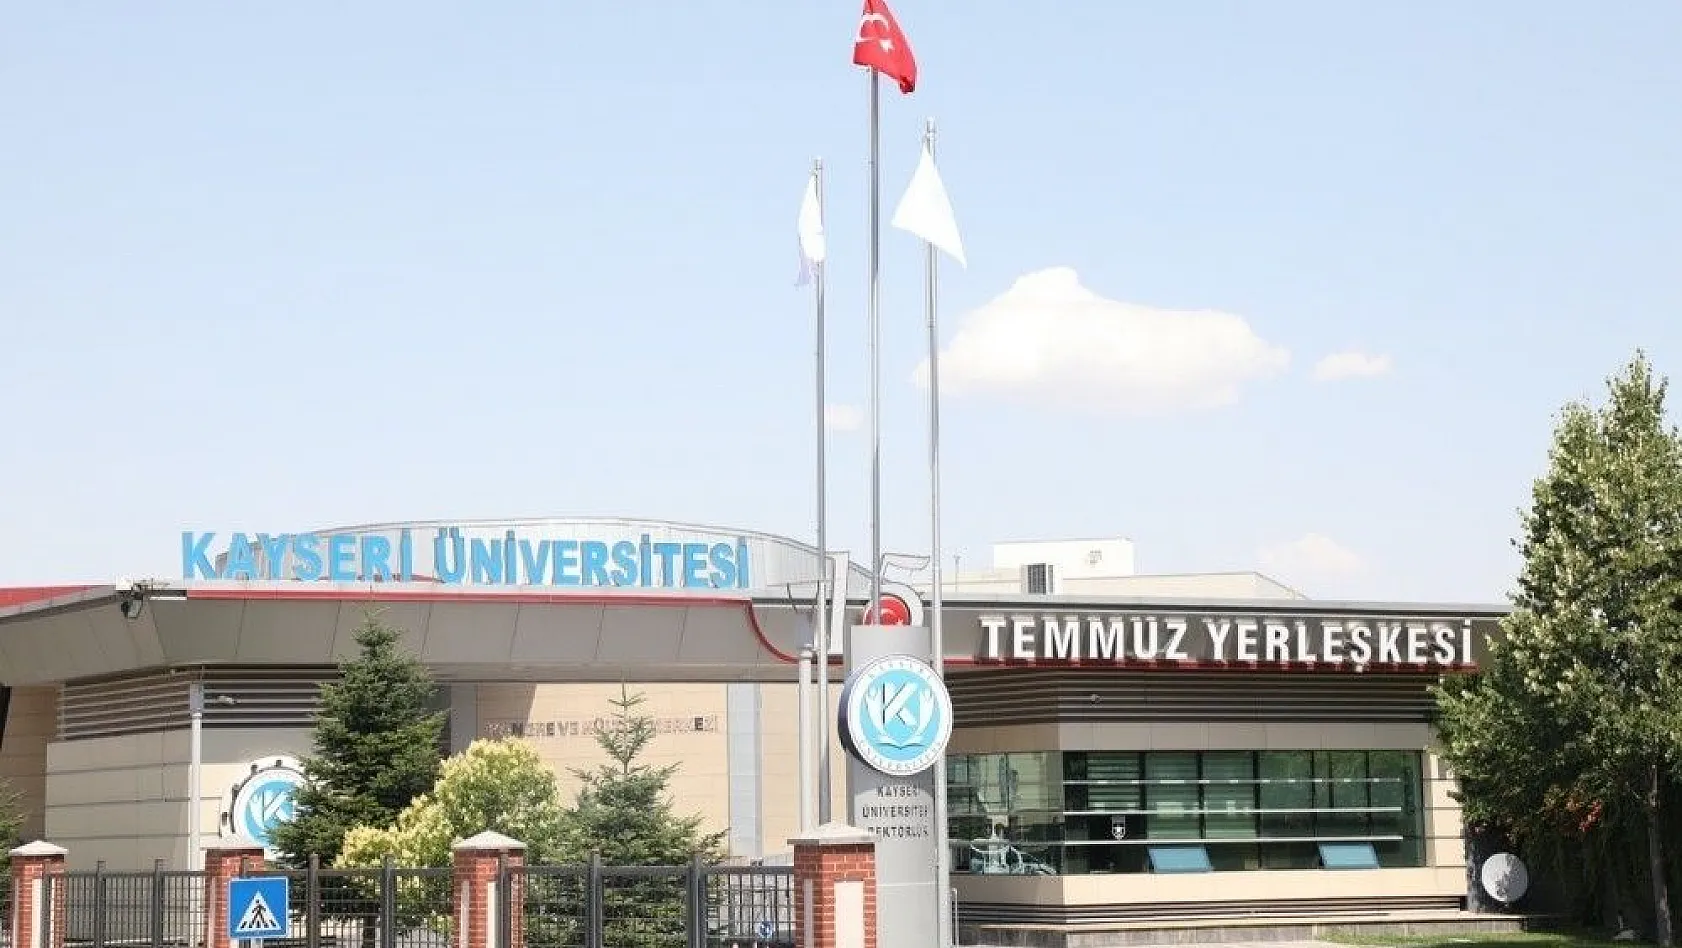 Kayseri Üniversitesi, YKS Yerleştirme Sonuçlarına Göre Doluluk Oranında Birinci Sırada
